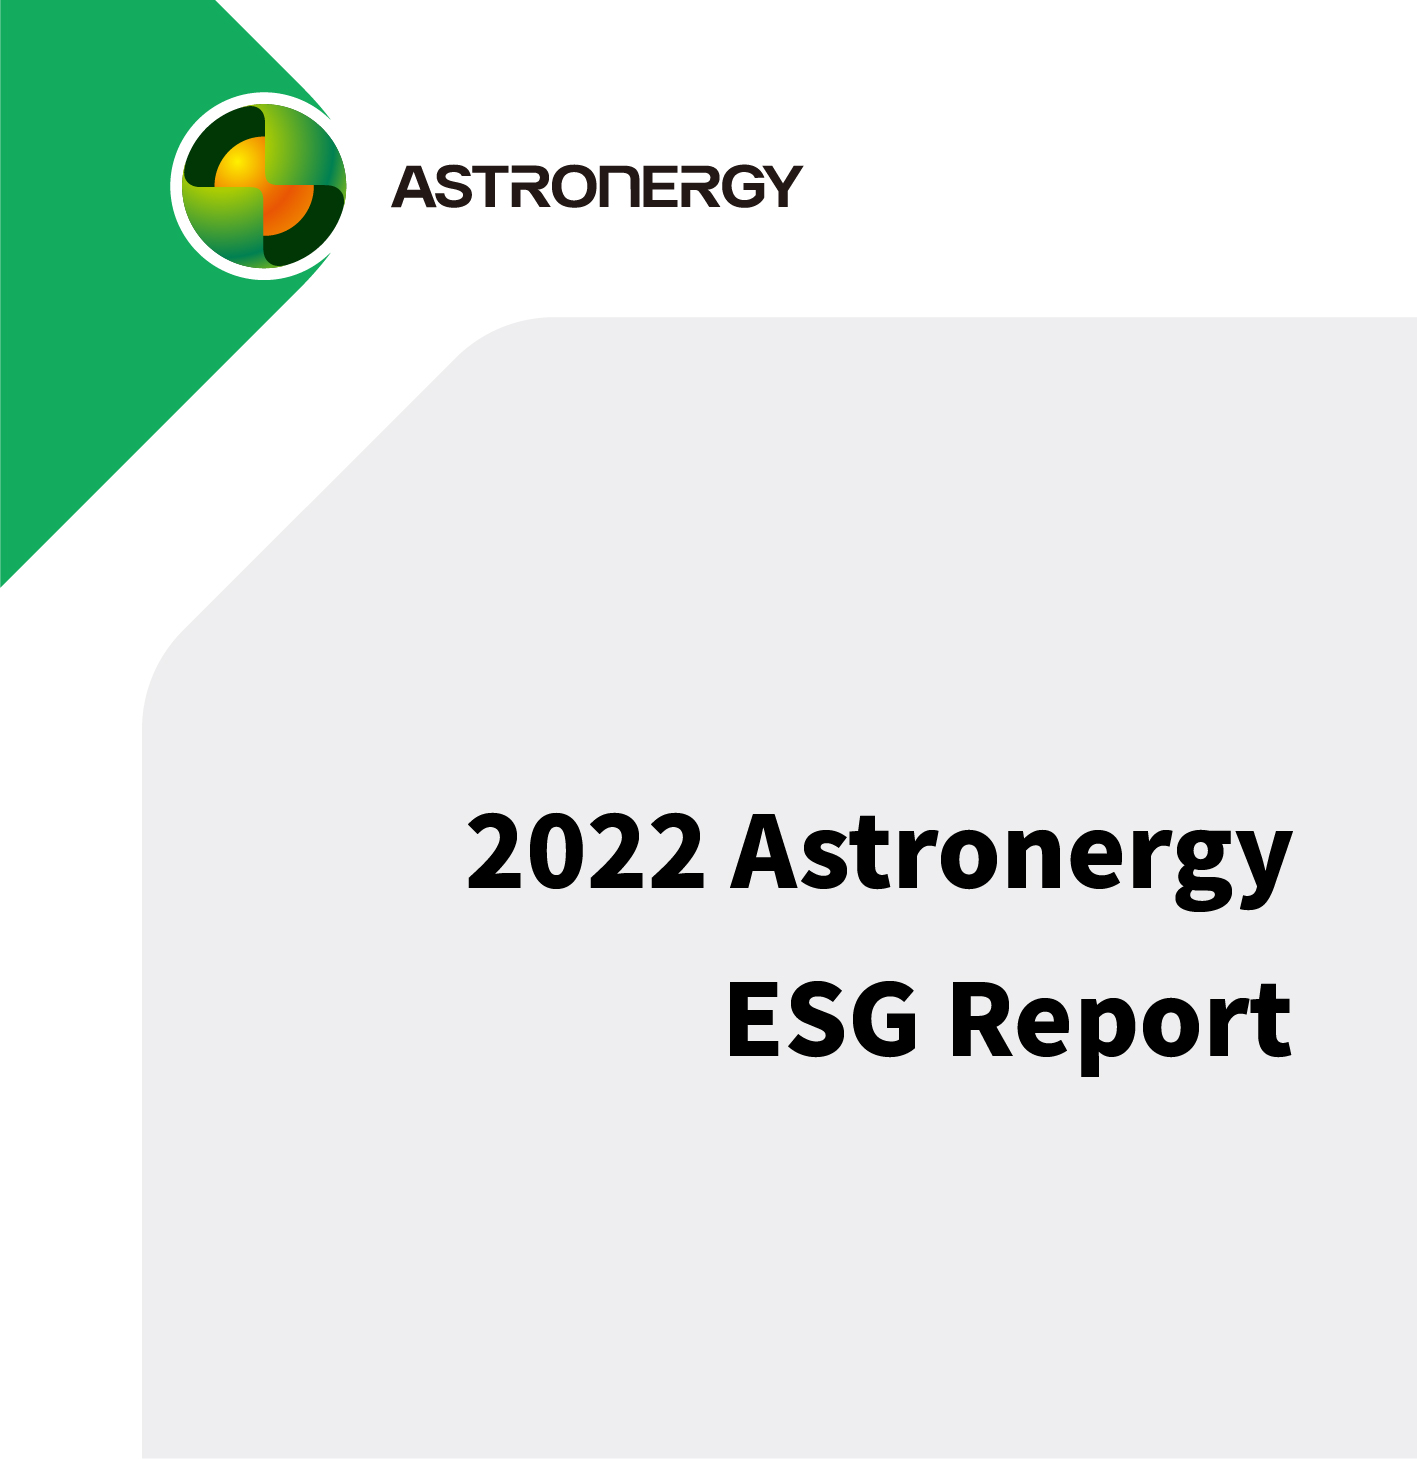 2022 Astronergy ESG Report